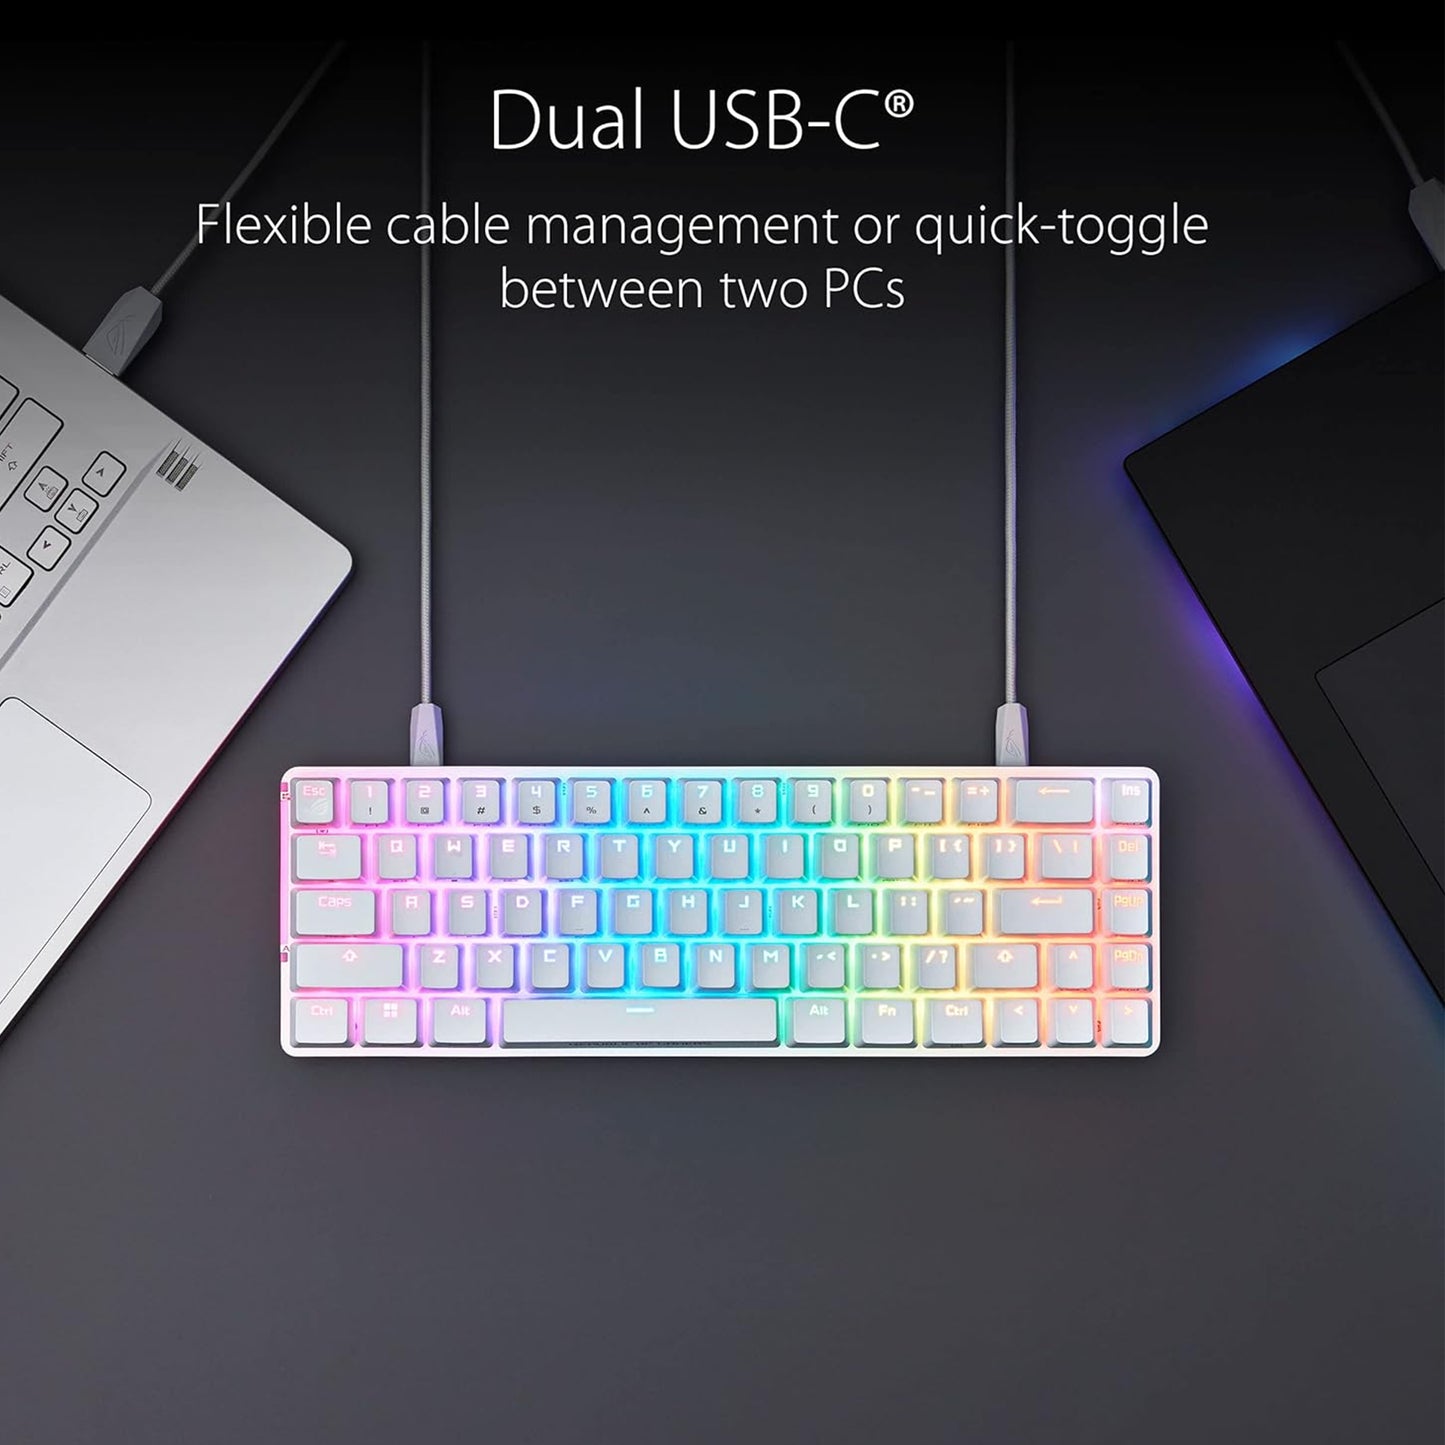 لوحة مفاتيح ميكانيكية مدمجة للألعاب ASUS ROG Falchion Ace 65% RGB، ومفاتيح ROG NX حمراء ومثبتات مفاتيح، وإسفنج مثبط الصوت، وأغطية مفاتيح PBT، سلكية مع KVM، وثلاث زوايا 